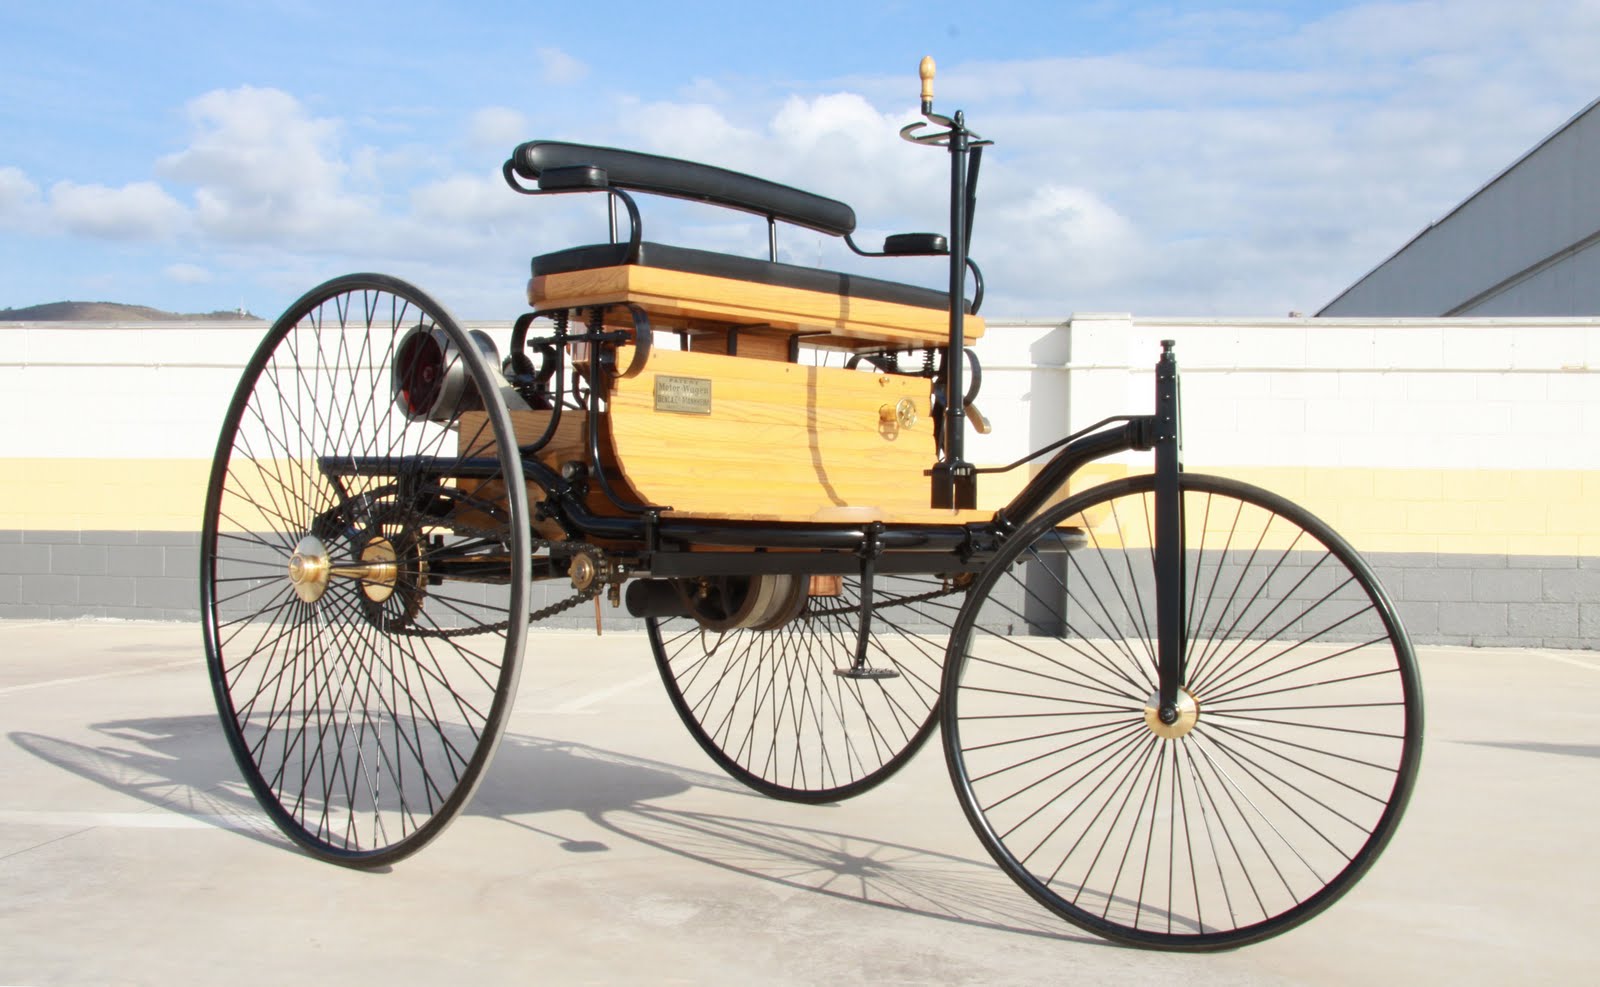 Первая машина название. Benz Patent-Motorwagen 1886.